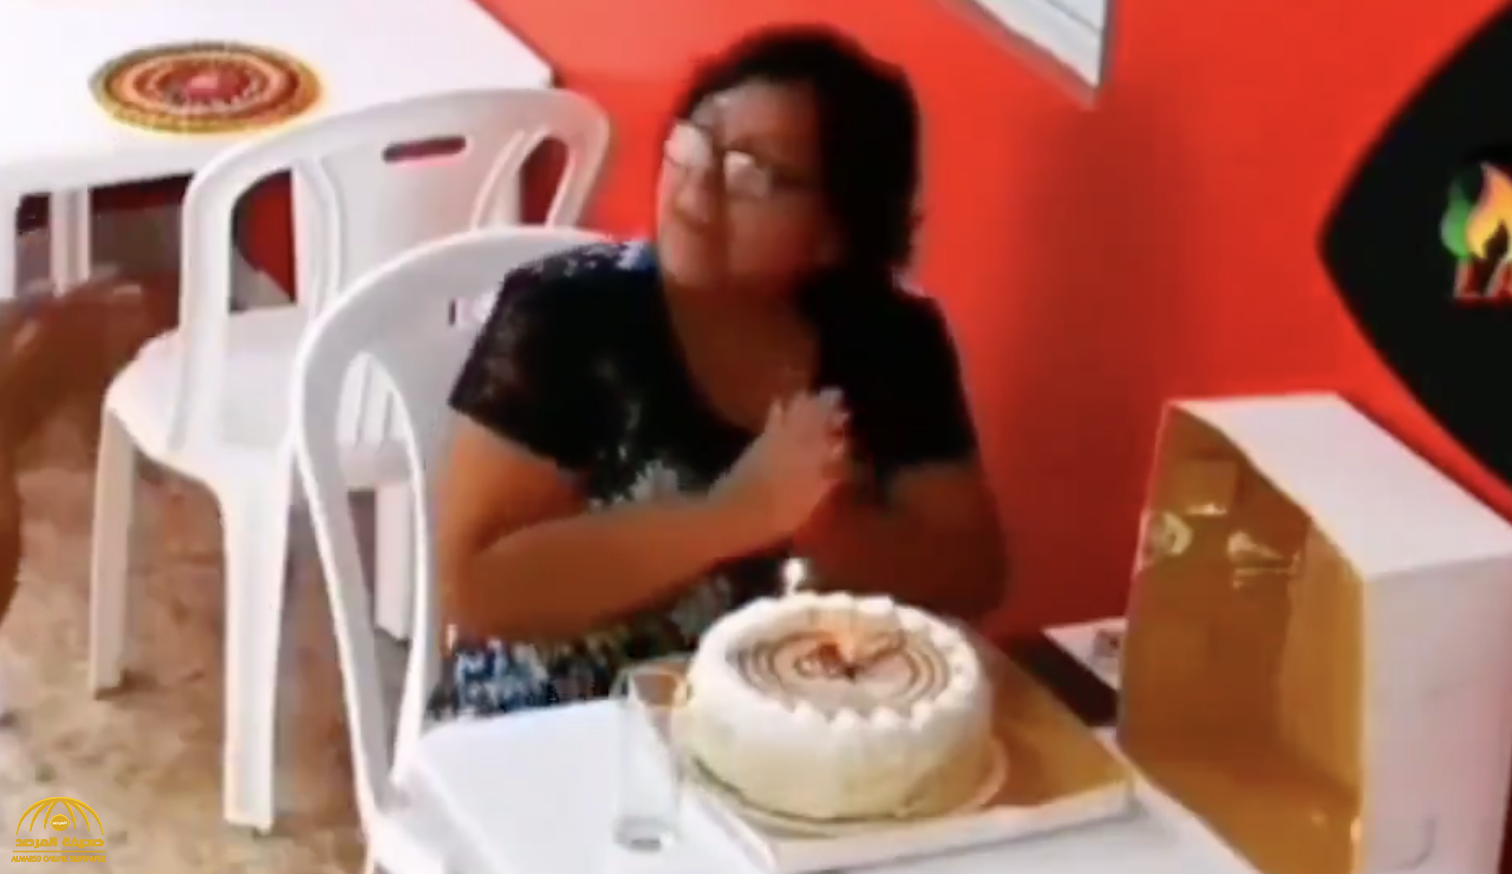 شاهد: امرأة تحتفل بعيد ميلادها بمفردها في مطعم.. وبعد أن غلبتها الدموع كانت المفاجأة